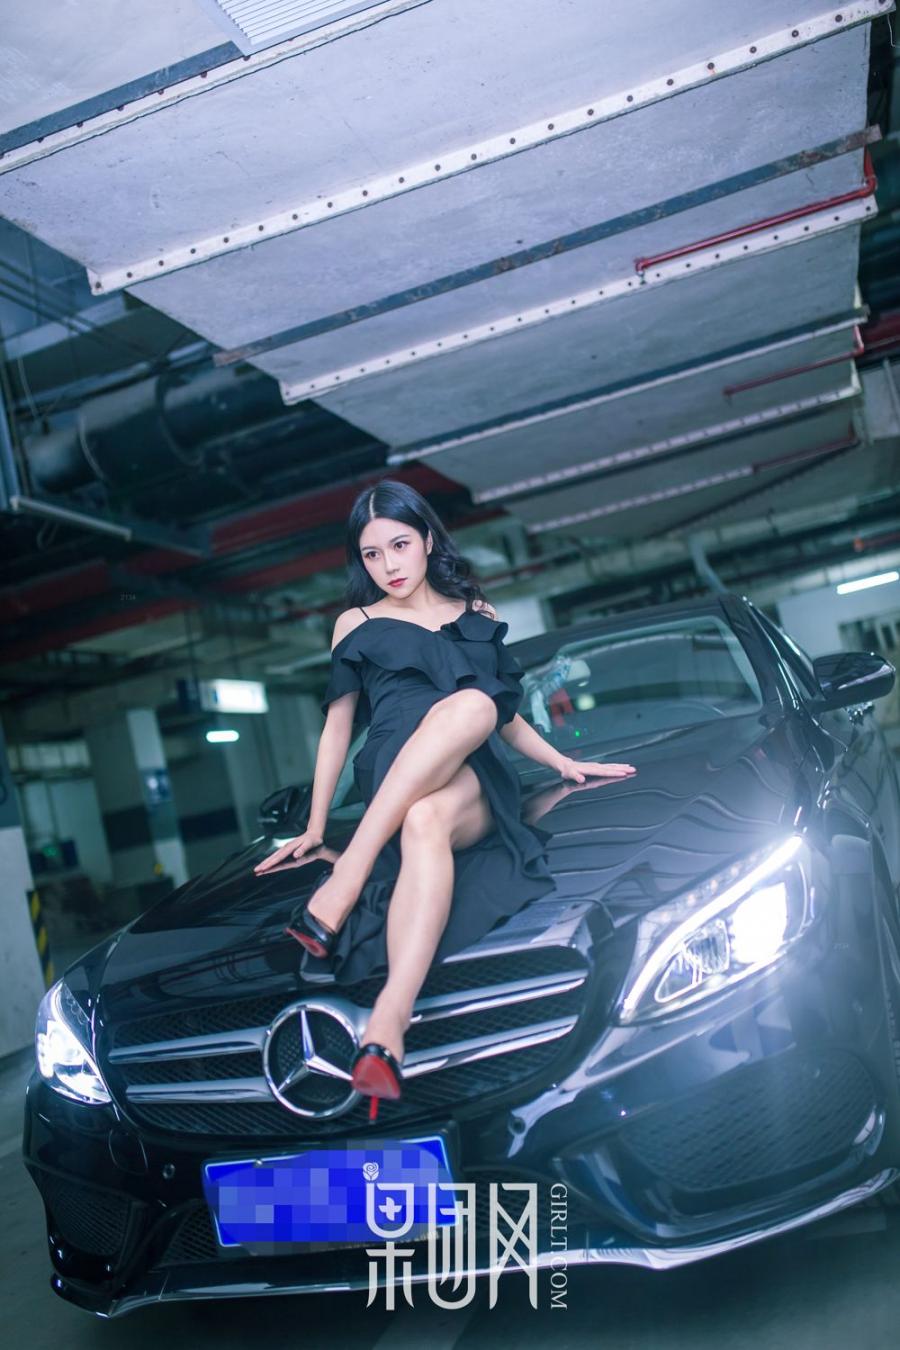 Girlt Beauty Girl vs luxury car